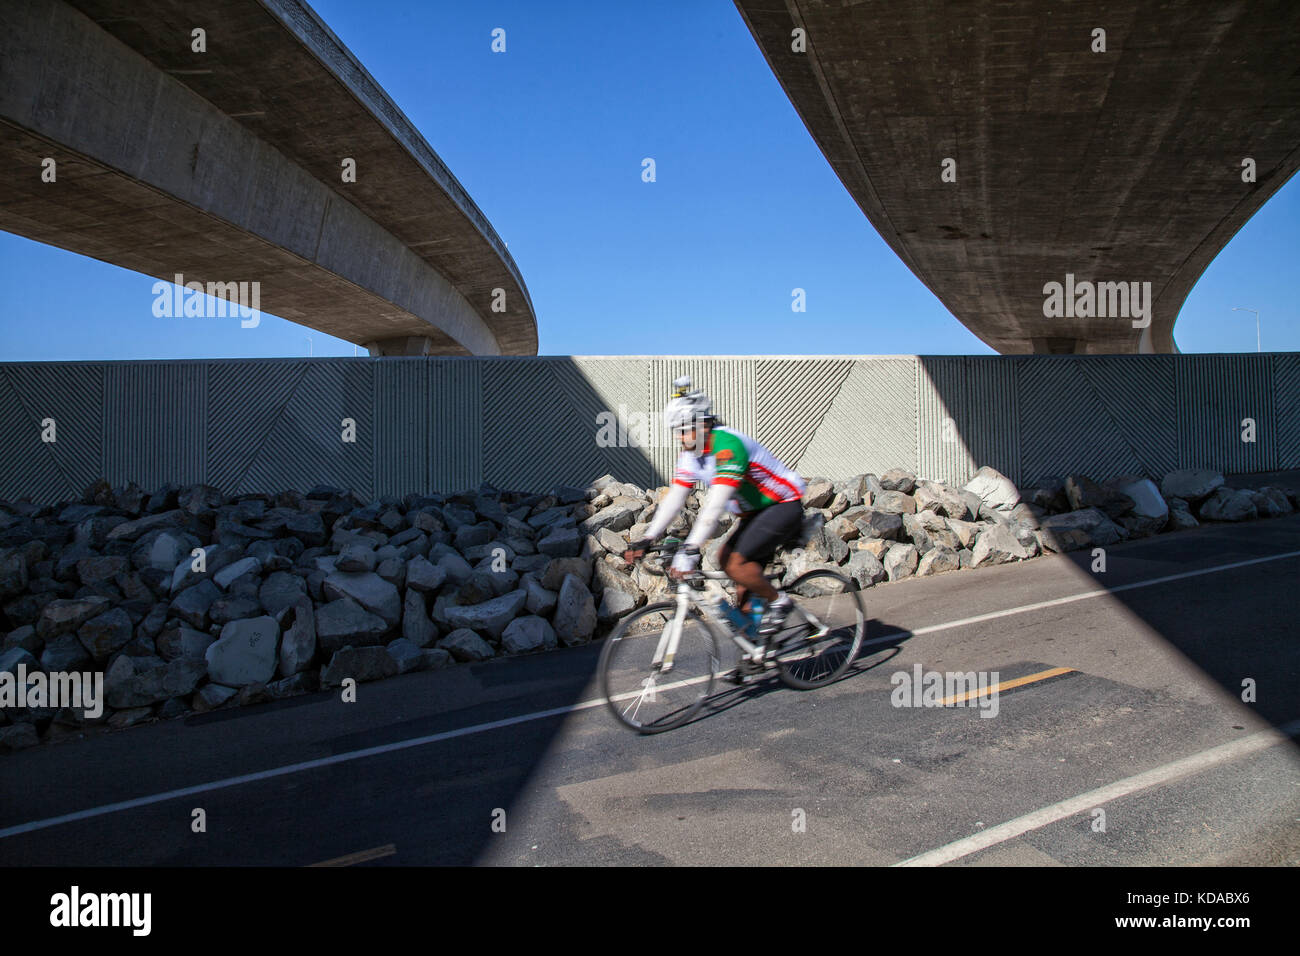 Percorso in bicicletta sotto il 105 freeway accanto al fiume di Los Angeles in Los Angeles, california, Stati Uniti d'America Foto Stock